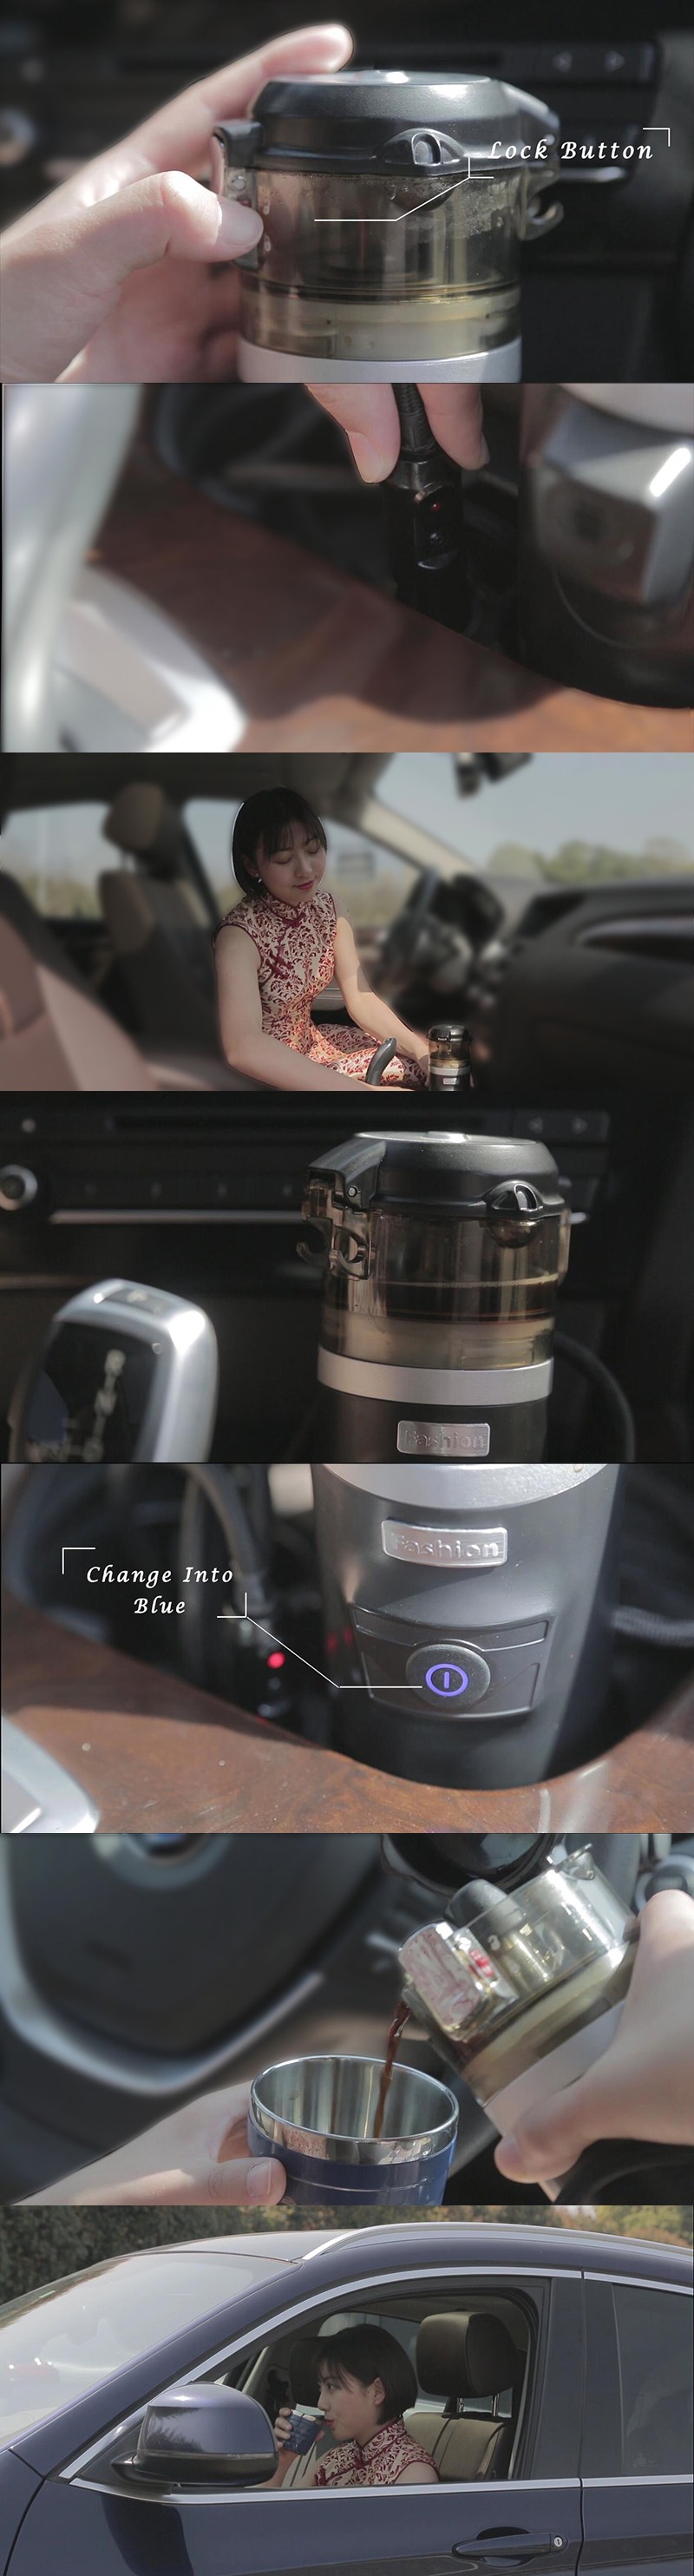 Mini Camp Portable för bilanvändning 12V Electric Espresso Coffee Maker för kaffekod eller malt kaffe i snabb matlagning